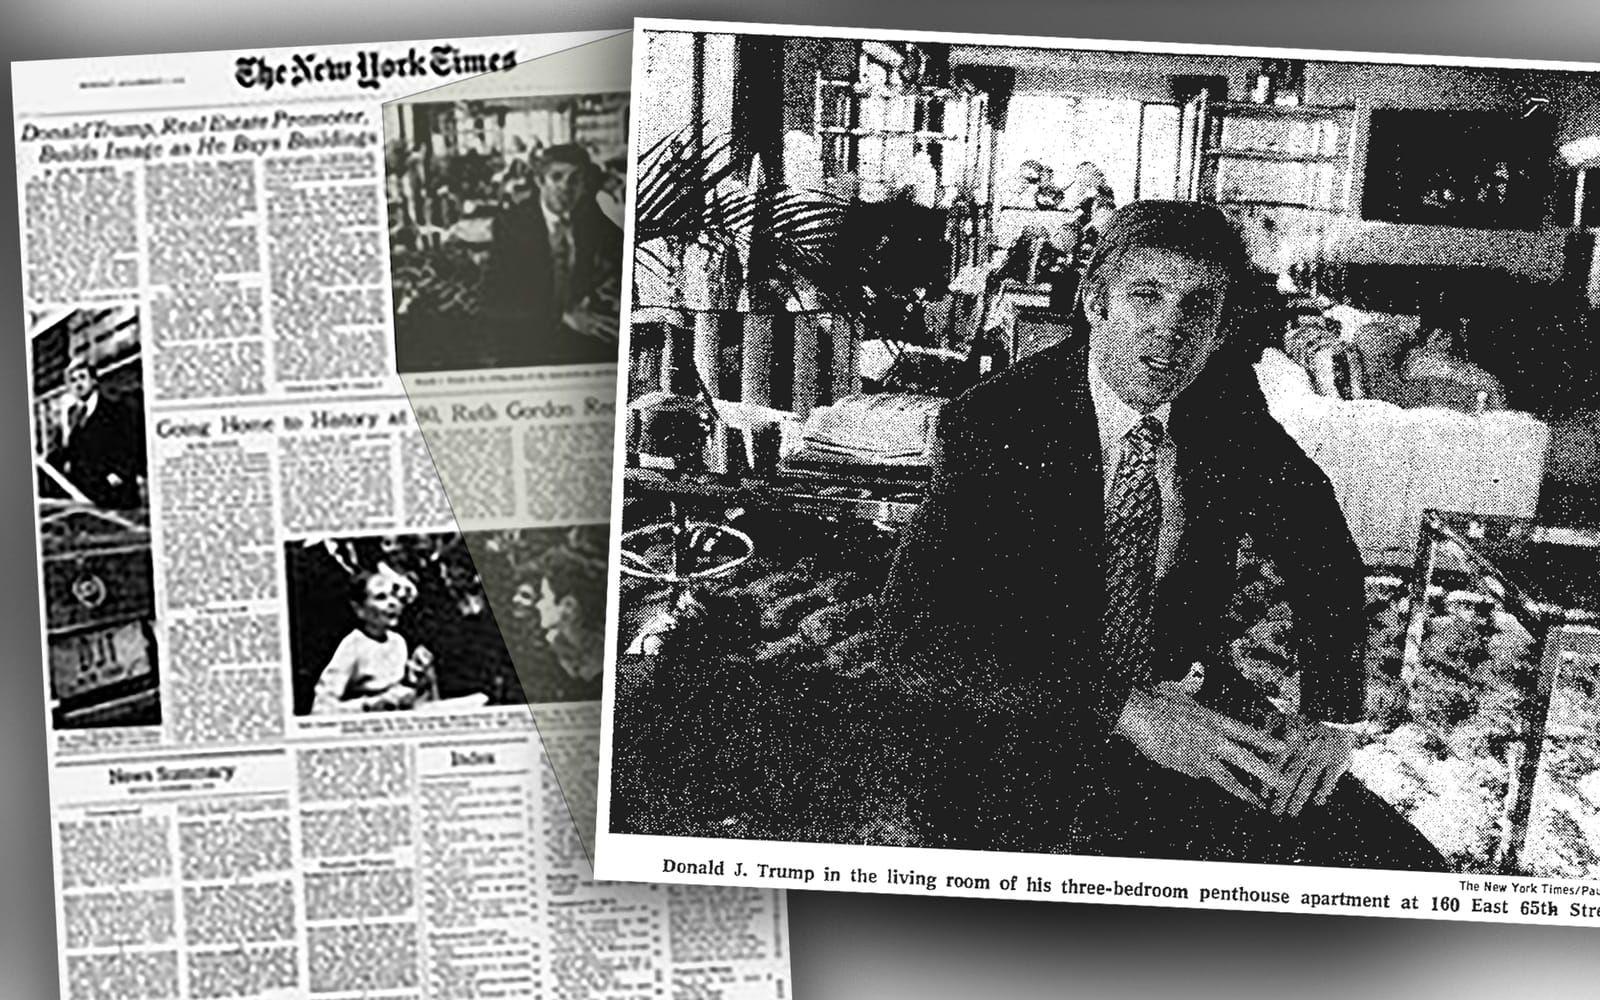 <strong>1976</strong> gjorde New York Times ett reportage med Trump som vid det här laget blivit något av en kändis i staden. ”Han är lång, smäcker och blond, med bländande vita tänder och påminner om Robert Redford. Han åker runt i stan i en silverfärgad Cadillac med egen chaufför och initialerna DJT på plåtarna. Han dejtar slanka fotomodeller, hänger på de finaste klubbarna och är, vid 30 års ålder, god för ’över 200 miljoner’", skrev tidningen då. Faksimil: New York Times